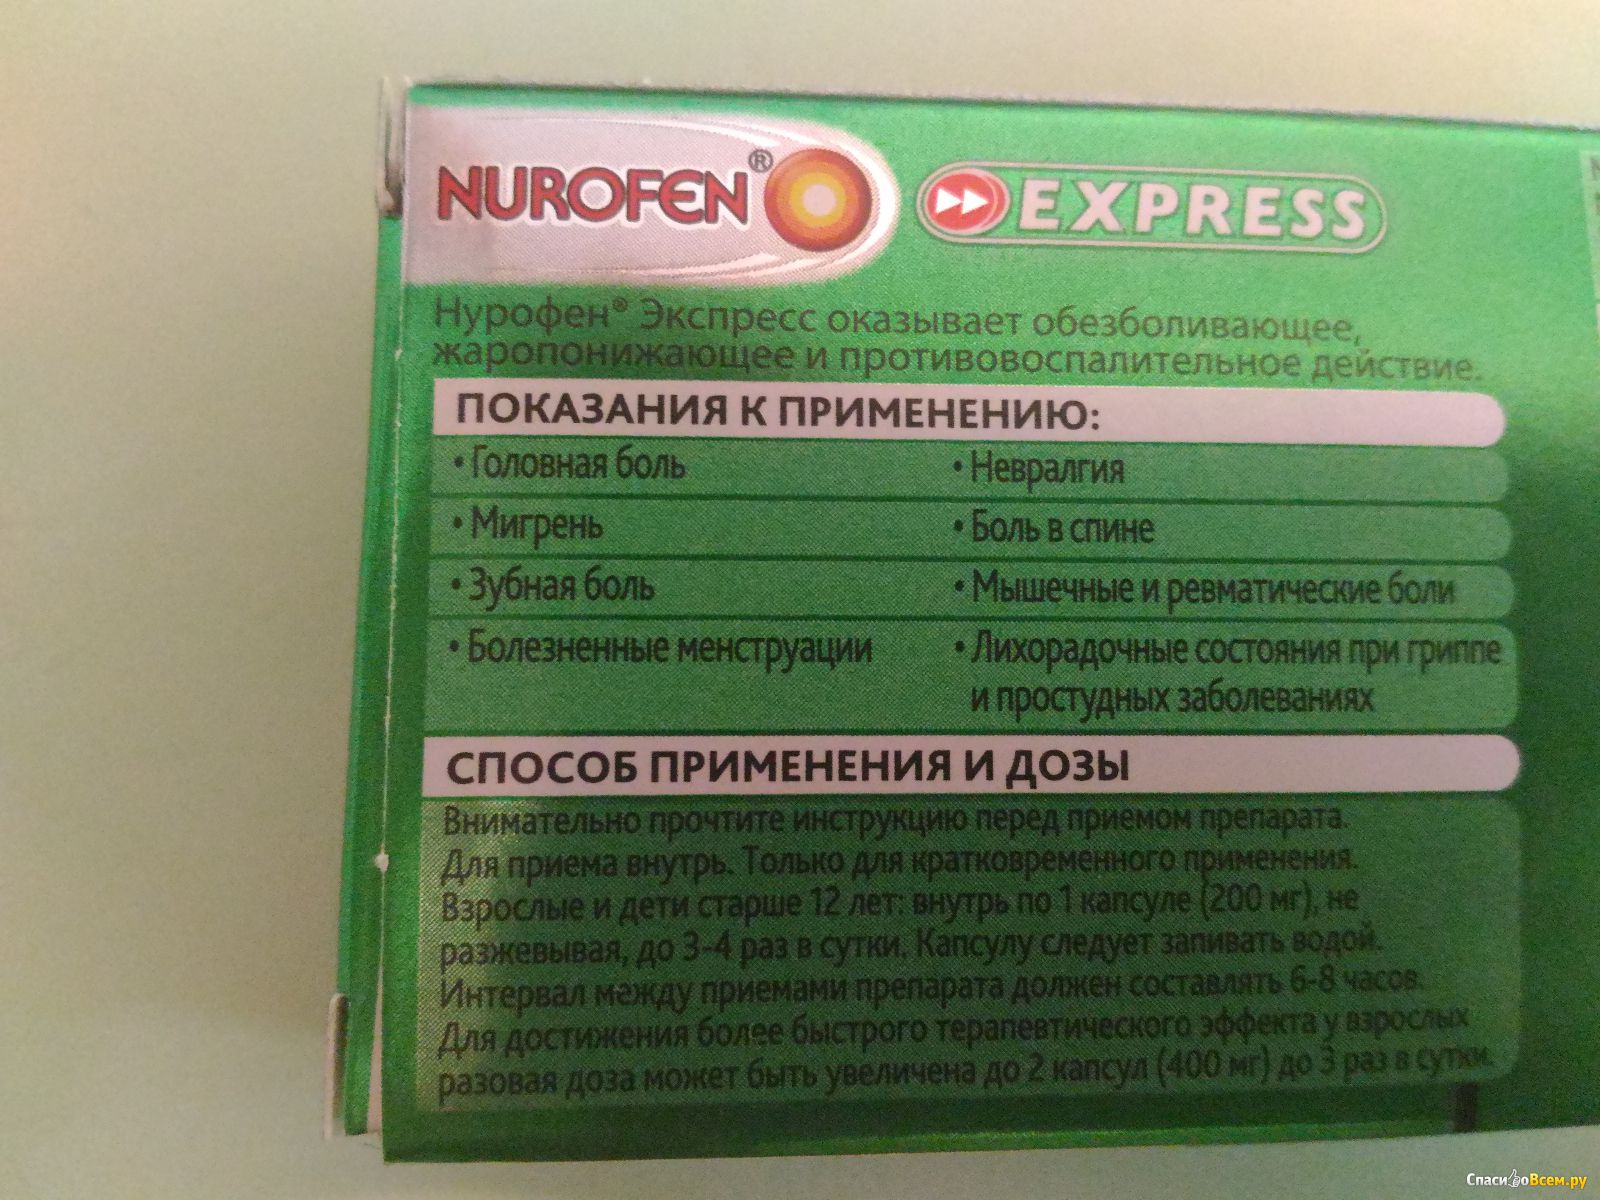 Нурофен кормящей можно. Нурофен экспресс жаропонижающие таблетки. Нурофен экспресс 16 капсул. Дозировка нурофена таблетки. Нурофен экспресс капсулы инструкция.